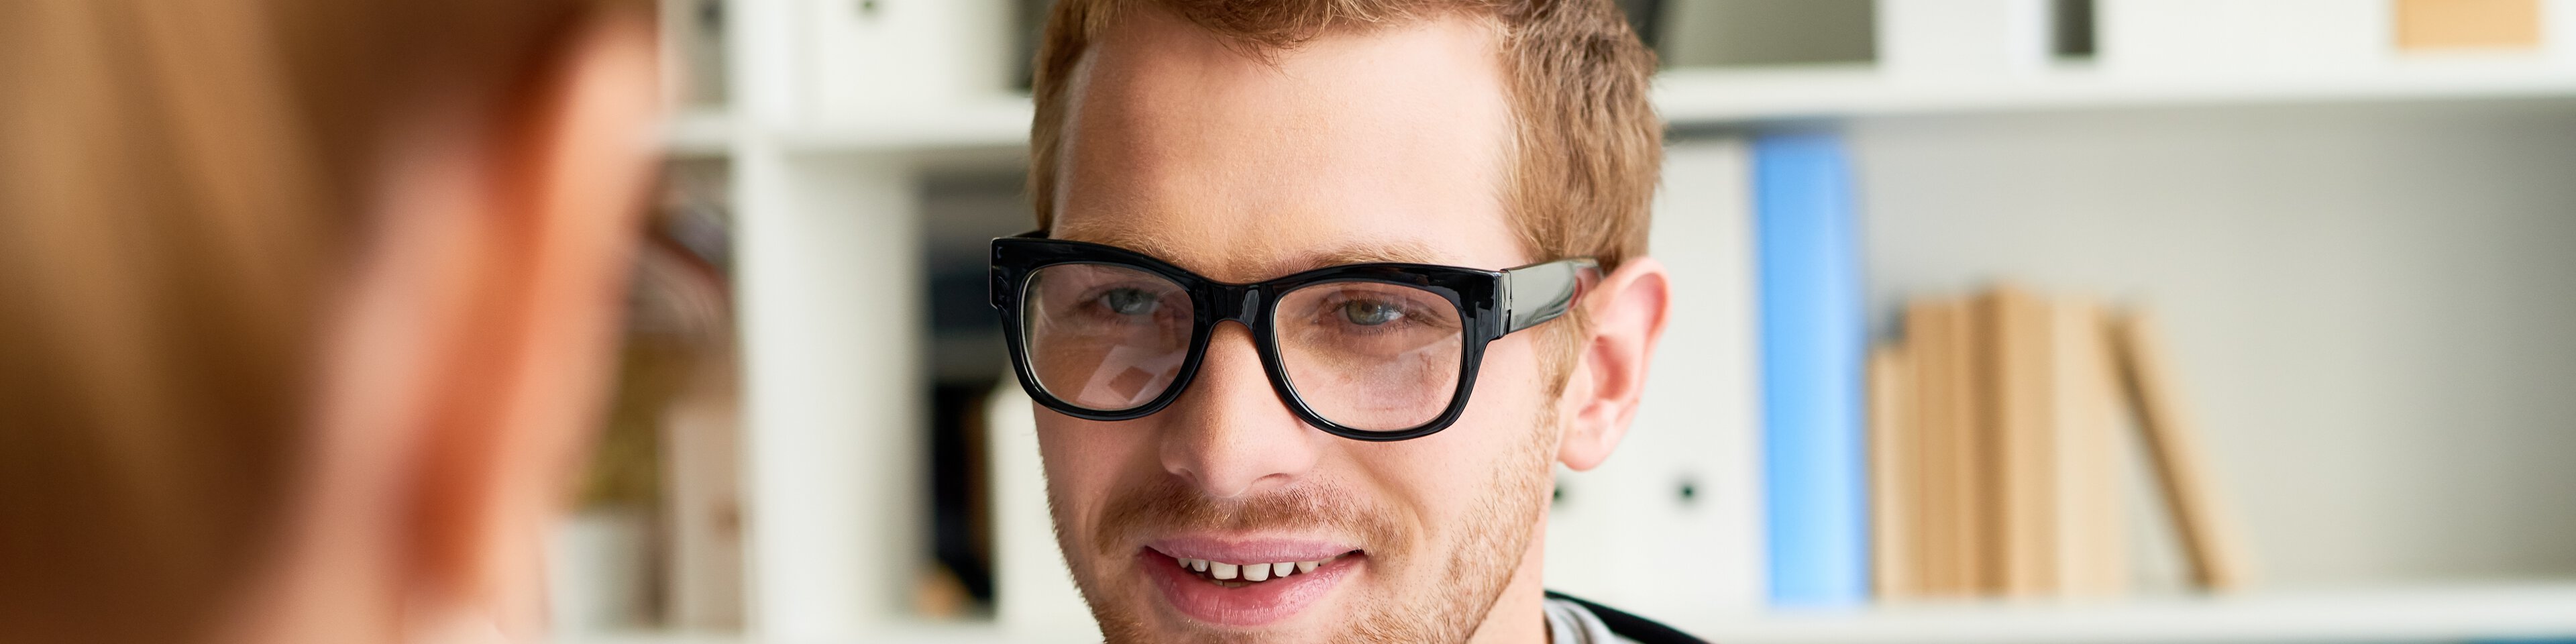 Junger Mann mit Brille im Gespräch mit seiner Therapeutin | © mediaphotos - Getty Images/iStockphoto